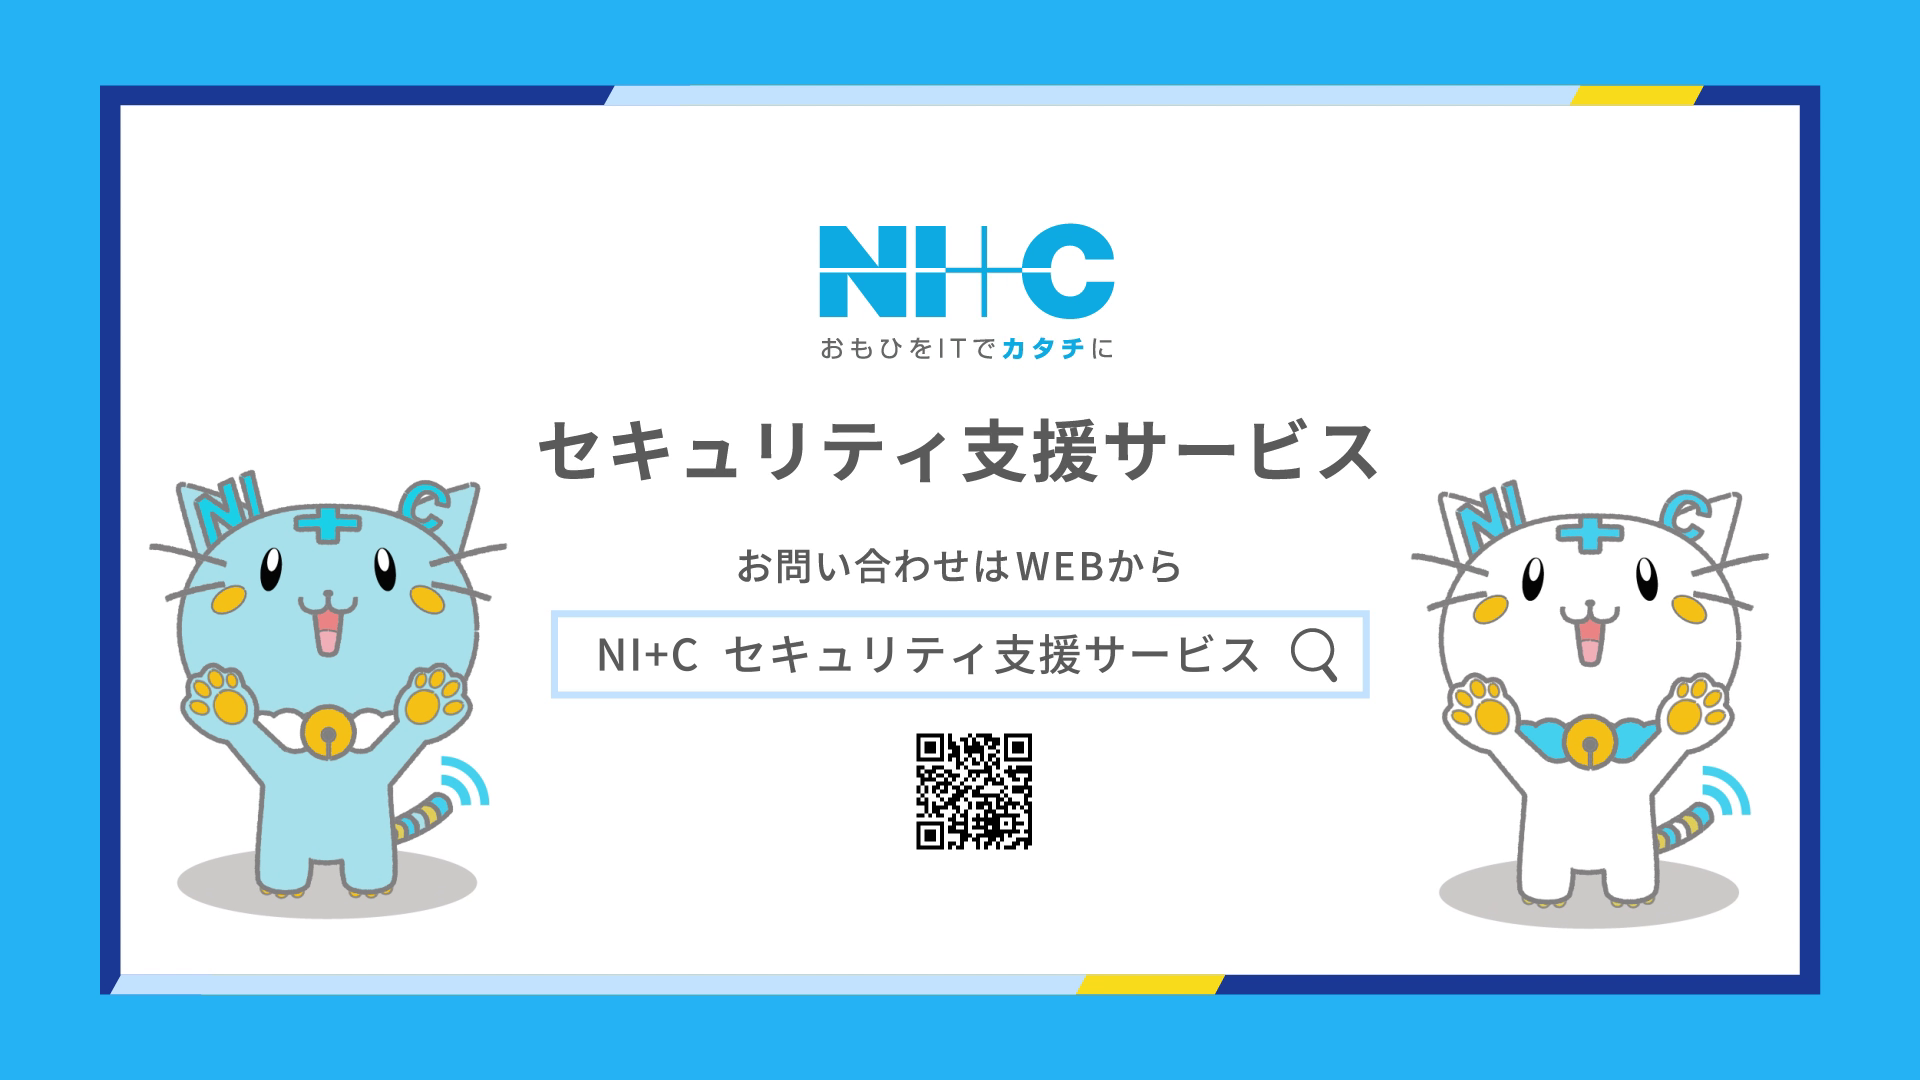 日本情報通信株式会社（NI+C） 様のサムネイル画像